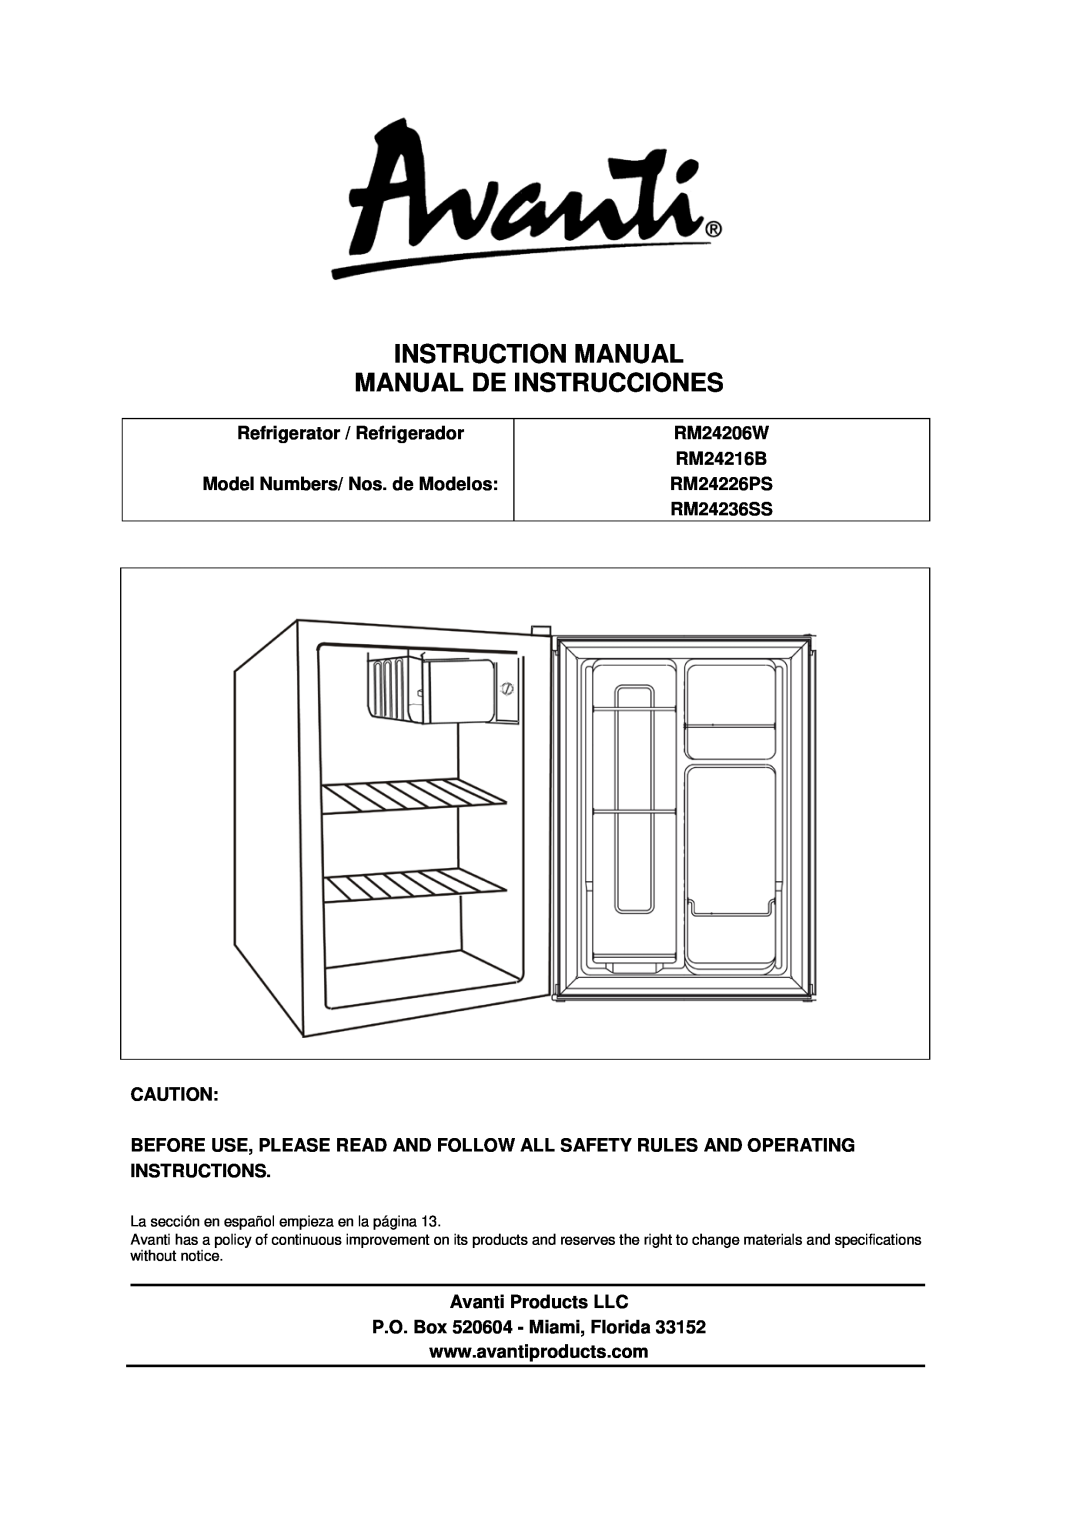 Avanti manual Refrigerator / Refrigerador, Model Numbers/ Nos. de Modelos, RM24206W RM24216B RM24226PS RM24236SS 